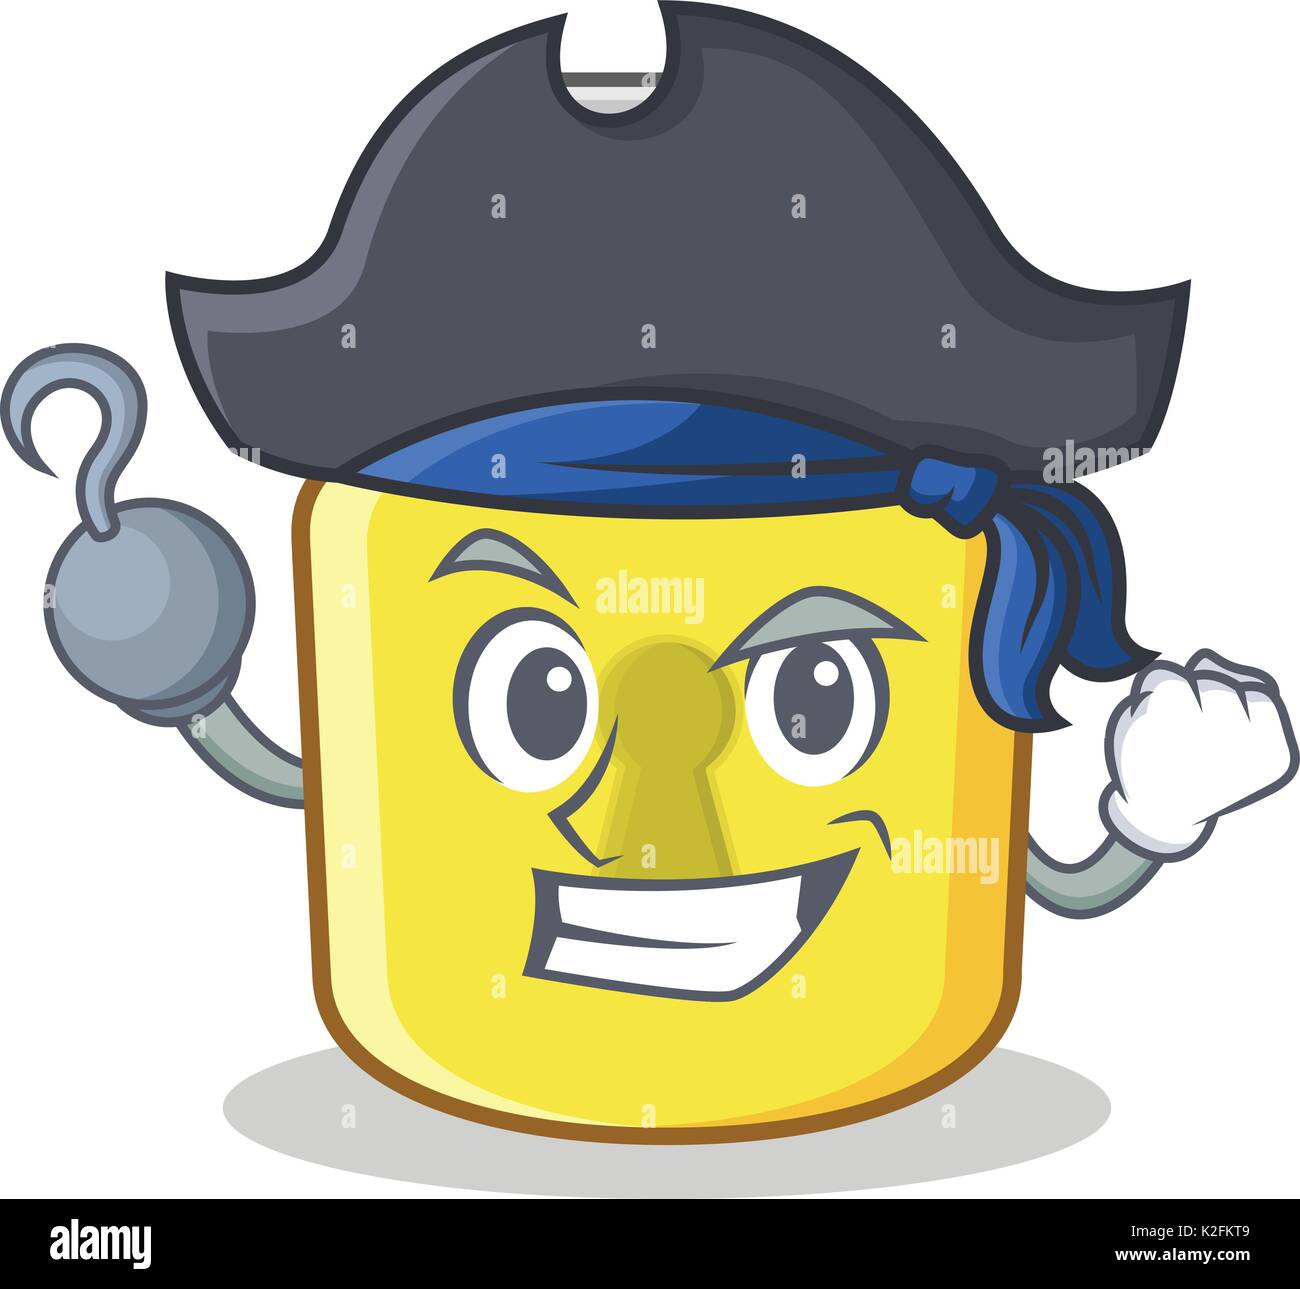 Pirate yellow lock character mascot Stock Vector